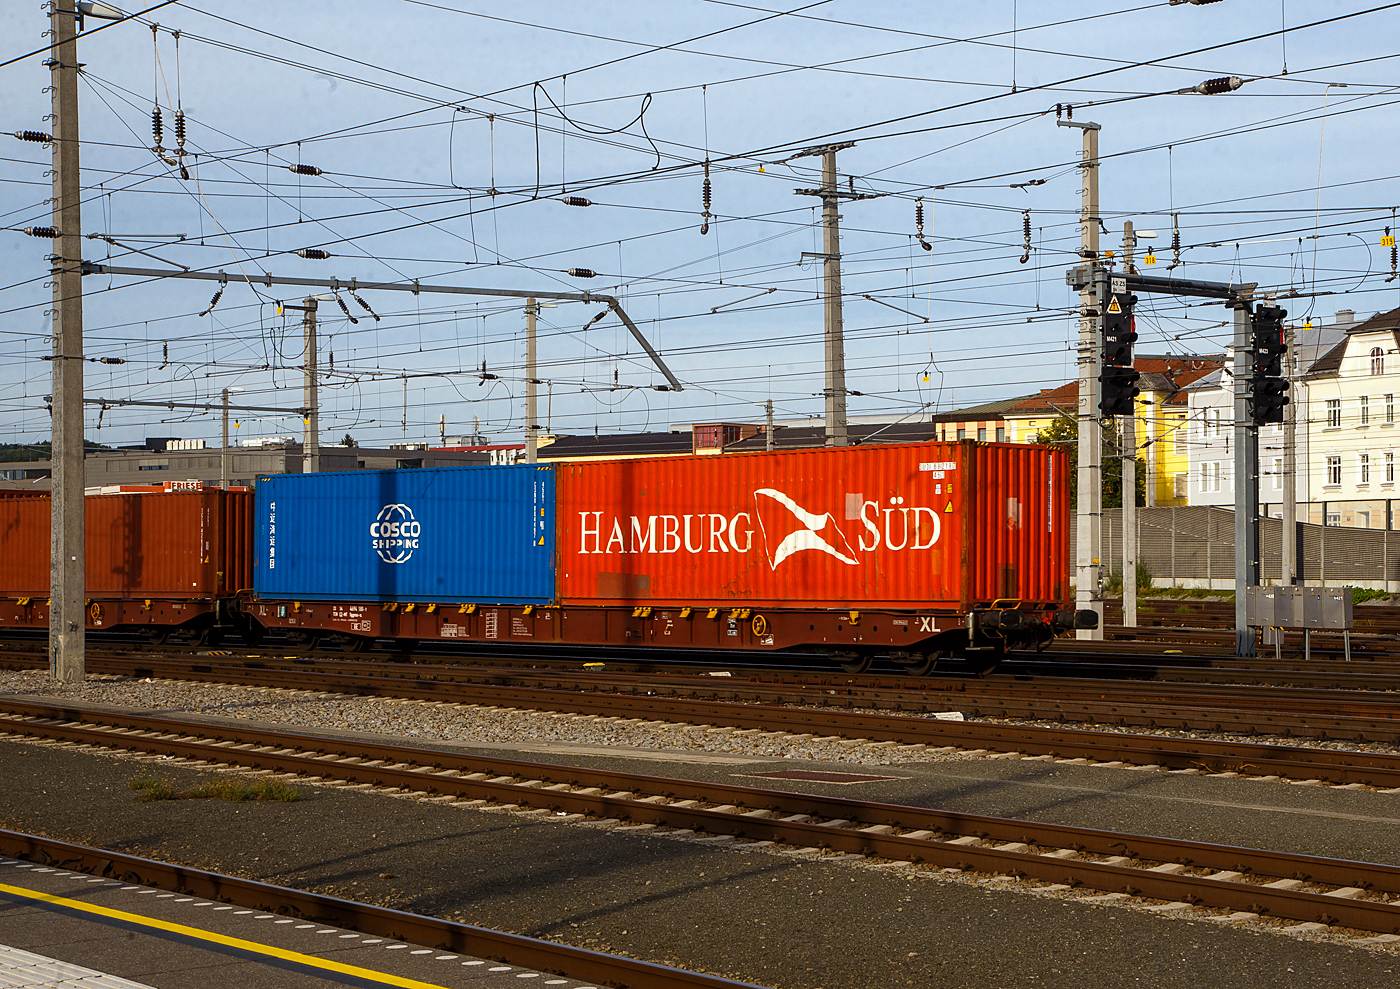 4-achsiger Drehgestell-Containertragwagen 33 54 4694 180-9 CZ-MT, der Gattung Sggnss-XL (80ft), der METRANS Rail s.r.o. (Prag / Praha), am 12.09.2022 im Zugverband, beladen mit zwei 40ft-Containern bei einer Zugdurchfahrt im Hbf Salzburg. Die METRANS ist ein 100 %-iges Tochterunternehmen der Hamburger Hafen und Logistik AG (HHLA). Sie ist Marktführer für Containertransporte im Seehafenhinterlandverkehr mit Mittel-, Ost- und Südosteuropa. Eigene Inland-Terminals, spezielle Loks  und umweltfreundliche Containertragwagen ermöglichen flexible, qualitativ hochwertige Angebote. 

Der LIGHT EIGHTY Sggnss 80’ wurde vom slowakischen Hersteller TATRAVAGÓNKA schon 2010 auf Veranlassung von METRANS entwickelt. Nicht nur dank seinem geringen Gewicht von ca. 22 t, sondern auch wegen den einzigartigen Lademöglichkeiten (5 Container­Bauarten und Wechselaufbauten in 30 verschiedenen Containerkombinationen) hat sich dieser Wagen schnell auf dem Markt etabliert. Im Vergleich zum 80’ langen Standardwagen kann bei dieser Variante ein Wagen mehr in Güterzüge aufgenommen werden. Durch die neuartige Konstruktion dieses TSI­konformen Wagens konnte nicht nur der Lärmpegel auf einen Messwert von 78 dB(A) reduziert werden. Eine Energieeinsparung von 20 % im Vergleich zum 80’-langen Standardgelenkwagen ermöglicht eine weitere Steigerung der Transporteffizienz. Weniger Drehgestellbedarf bedeutet weniger Instandhaltungsaufwand für Bremssysteme.

TECHNISCHE DATEN:
Spurweite: 1 435 mm
Anzahl der Achsen: 4 in zwei Drehgestellen
Länge über Puffer: 25 940 mm
Drehzapfenabstand: 19 300 mm
Achsabstand im Drehgestell: 1 800mm
Laufraddurchmesser: 920 mm (neu)
Ladelänge : 24 700 mm  (z.B. 2 x 40’ ISO Container)
Höhe der Ladeebene über SOK: 1 155 mm
Höchstgeschwindigkeit:  100 km/h (Lastgrenze SS und leer 120 km/h)
Max. Zuladung bei Lastgrenze S: 68,0 t (ab Streckenklasse D)
Max. Zuladung bei Lastgrenze SS: 58,0 t (ab Streckenklasse C)
Eigengewicht: 22 000 kg
Kleinster bef. Gleisbogenradius: R 75 m
Bauart der Bremse: KE-GP-A (K)
Bremssohle: Jurid 816M
Feststellbremse: Ja
Intern. Verwendungsfähigkeit: TEN-GE

Erläuterung: Lastgrenze S = 20 t Radsatzlast, Lastgrenze SS = 22,5 t Radsatzlast.
